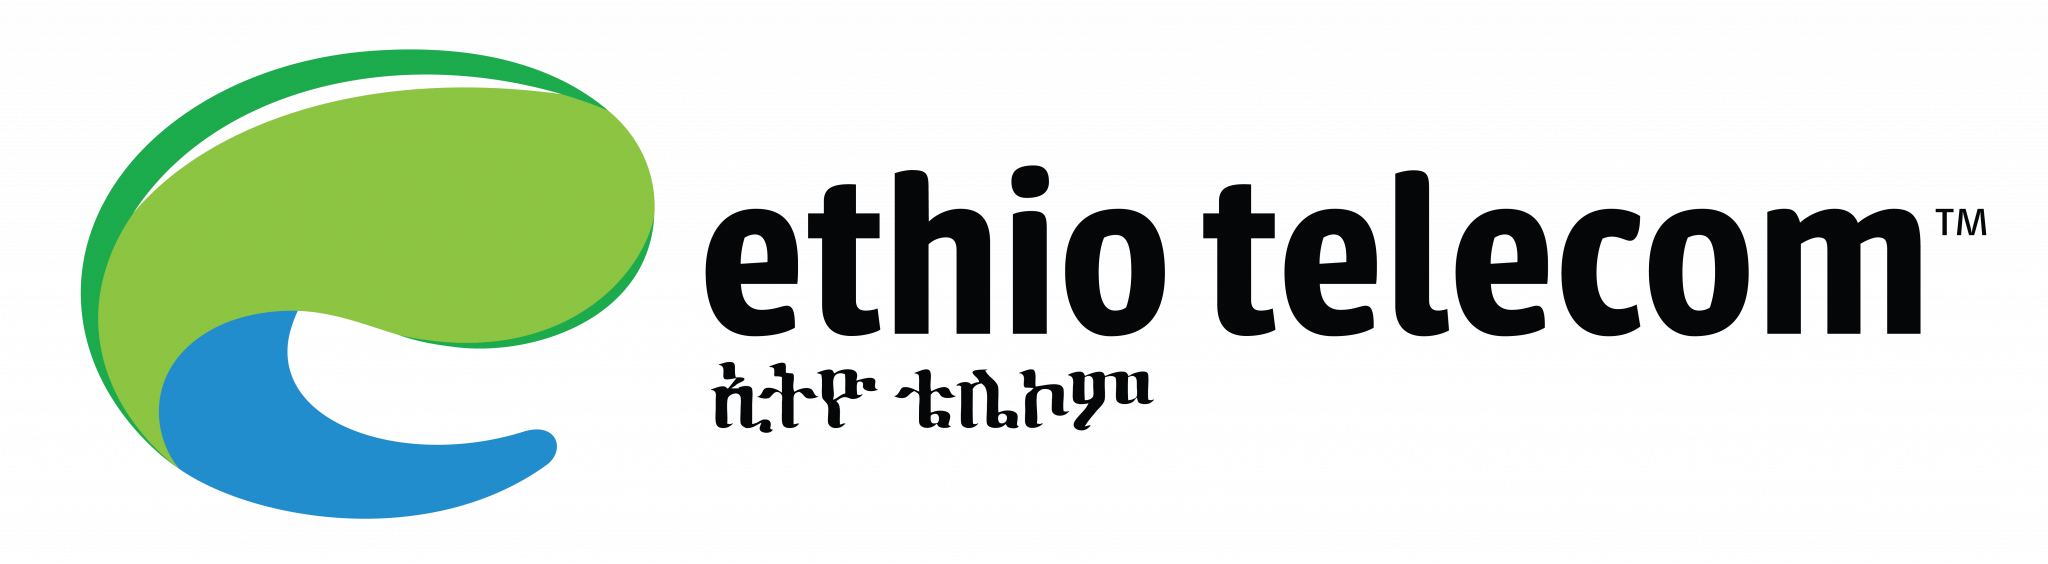 Ethio telecom